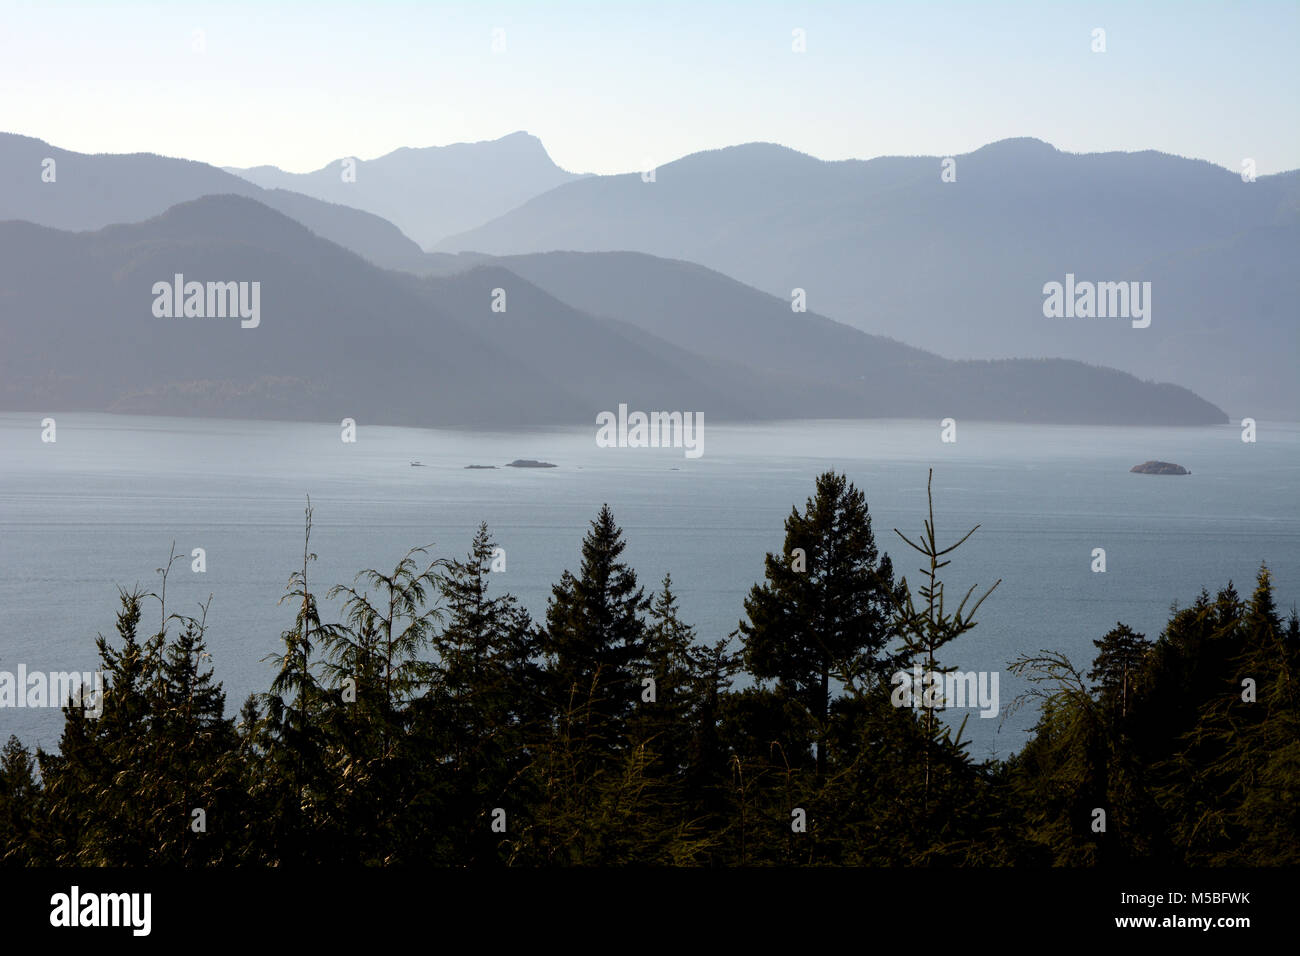 Une vue de la baie Howe et les montagnes de l'île de joueur et la côte continentale en silhouette, vu de Lions Bay, en Colombie-Britannique, Canada. Banque D'Images